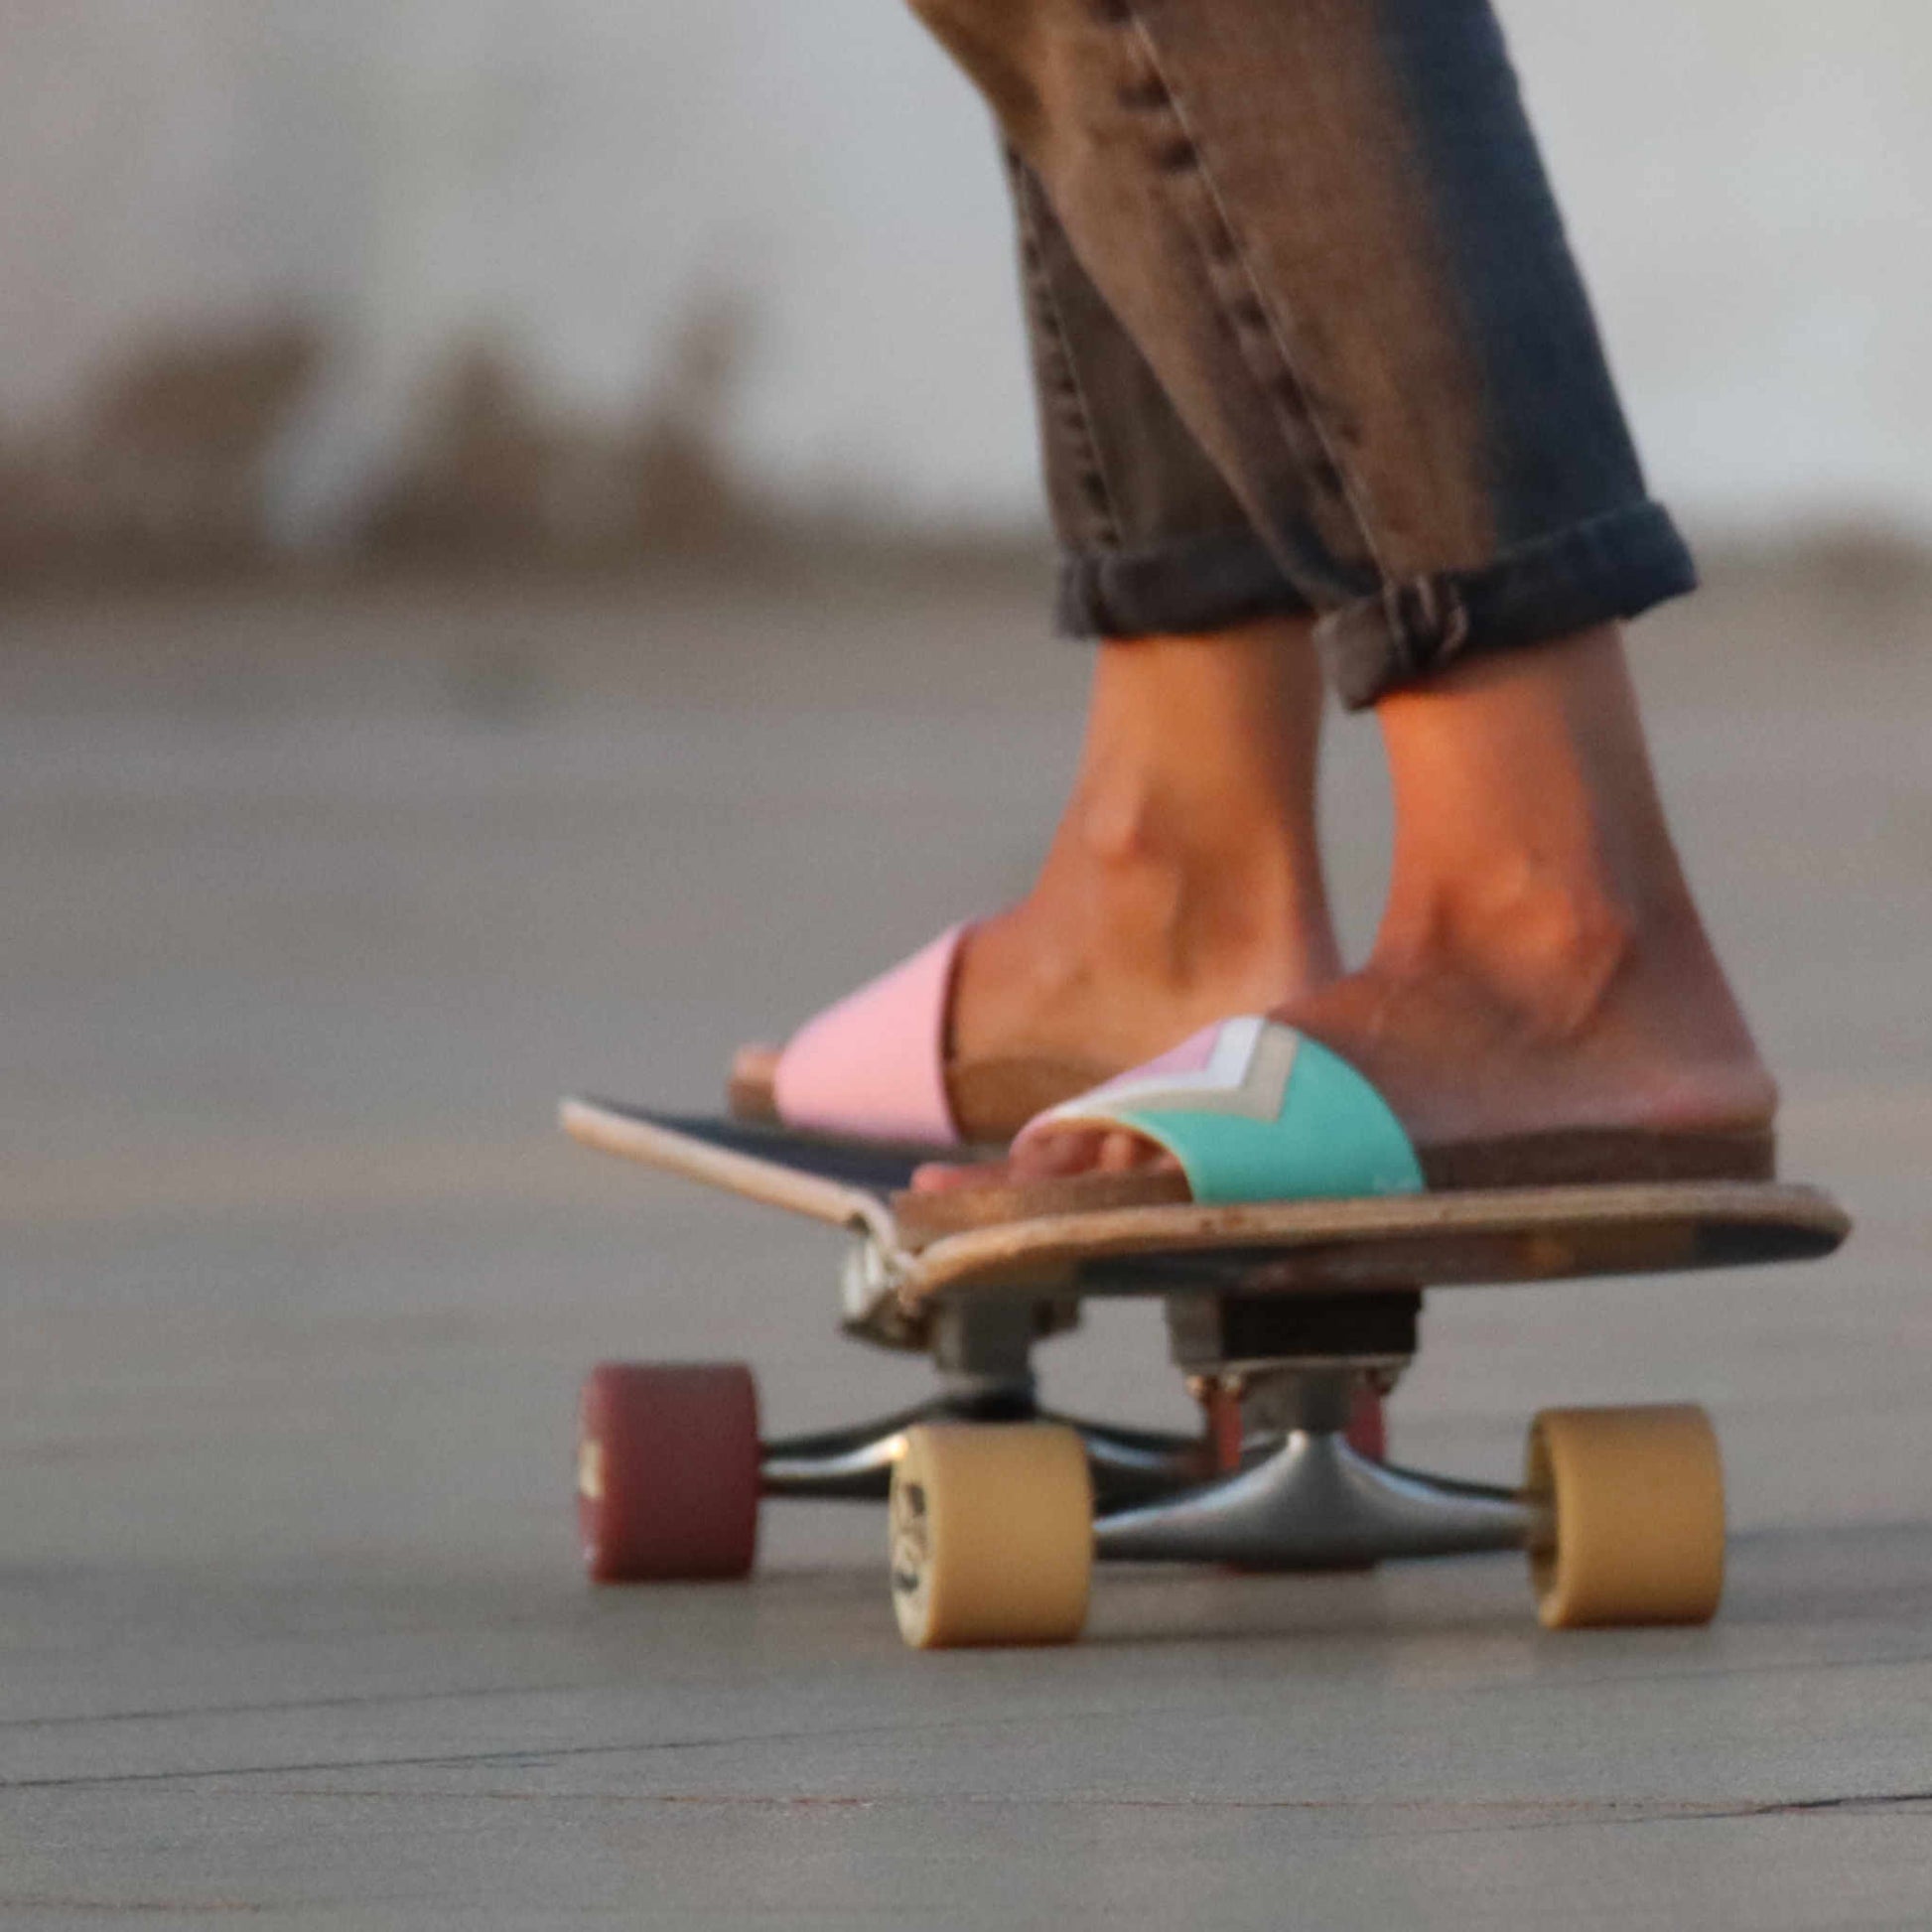 Rosa Sandalen; vegan mit Fußbett; Farben Erdbeerpink, Weiß, Nude, Mint; Marke Fünve; Modell Strawberry; beim skaten